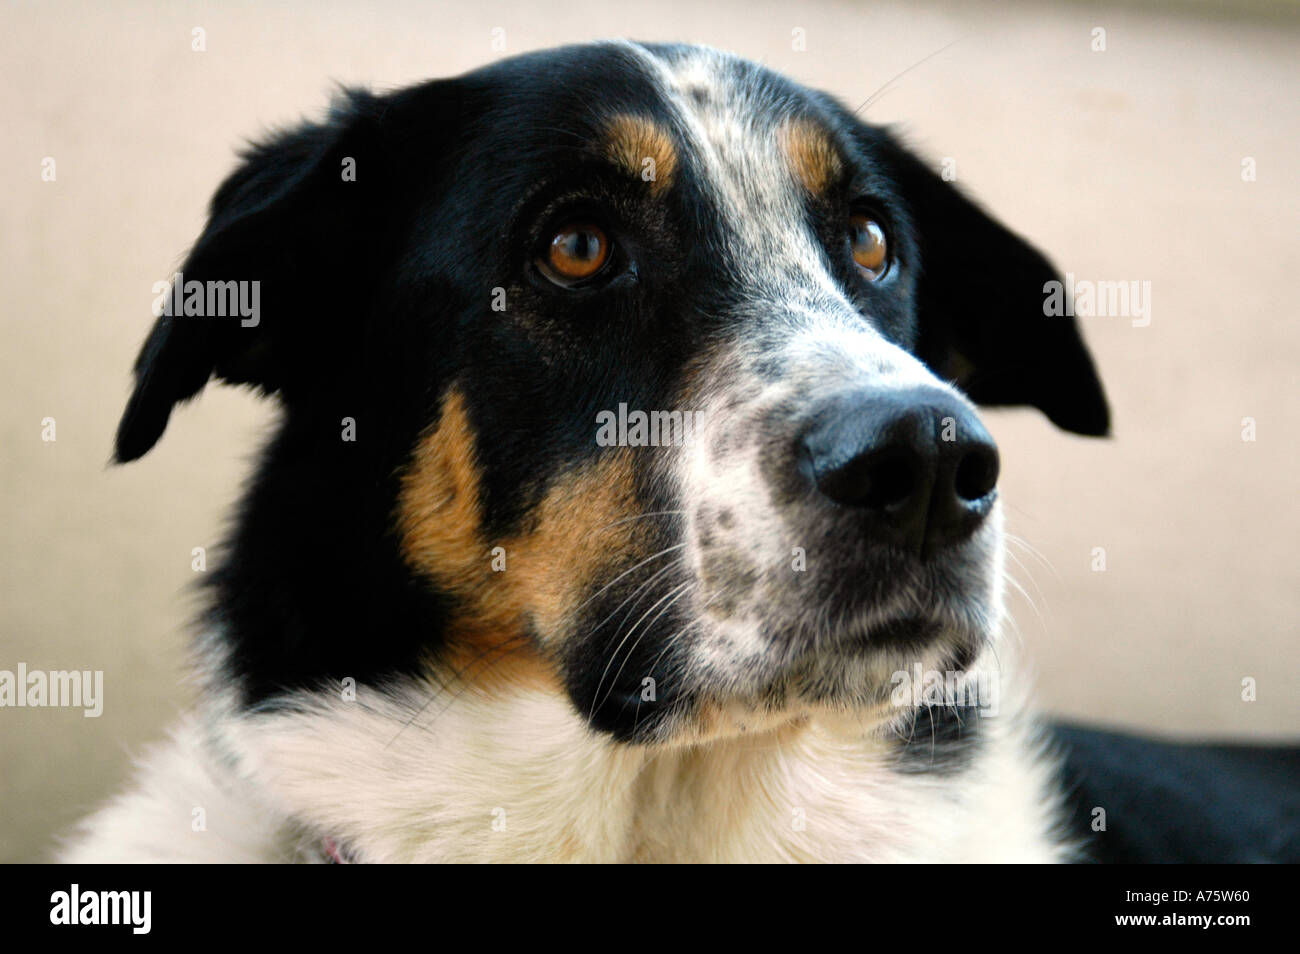 A mixed breed dog Stock Photo